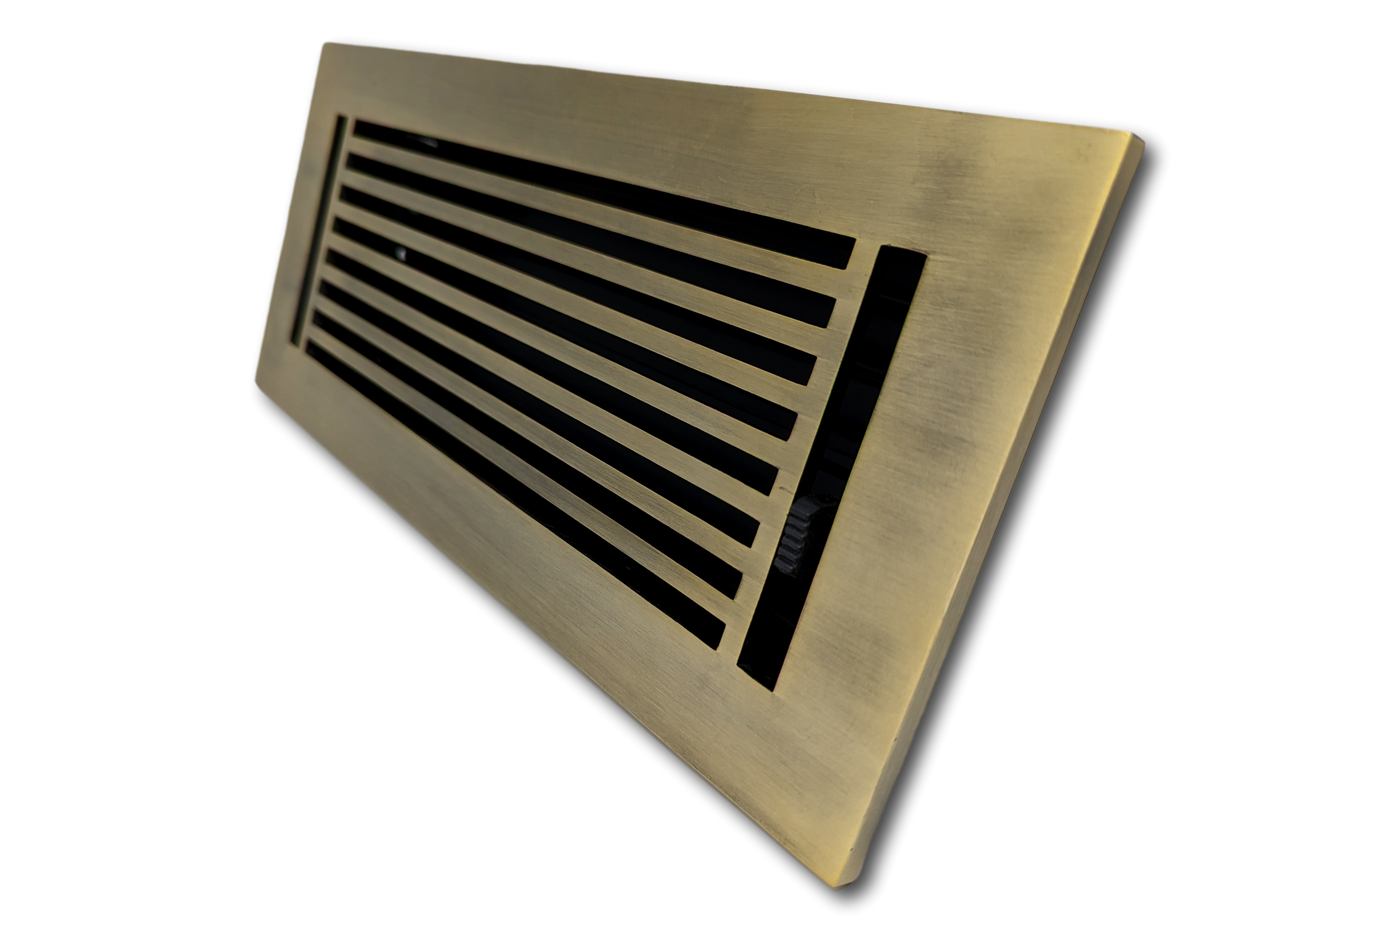 Cast Aluminum Linear Bar Vent Covers - Oxidized Bronze